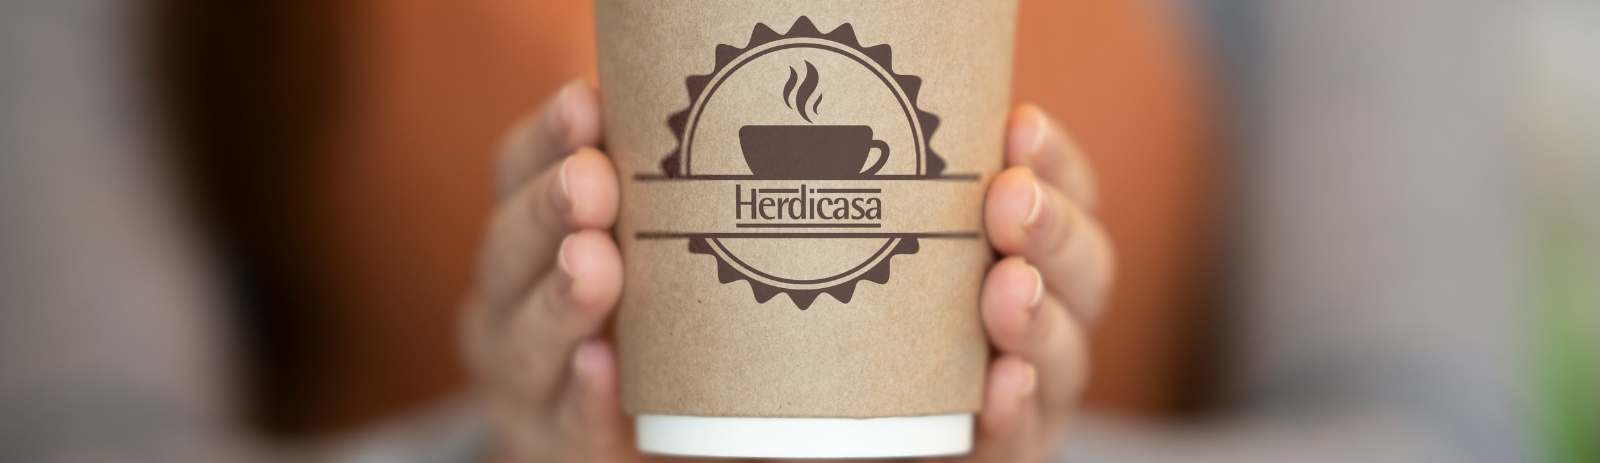 Herdicasa Sostenible